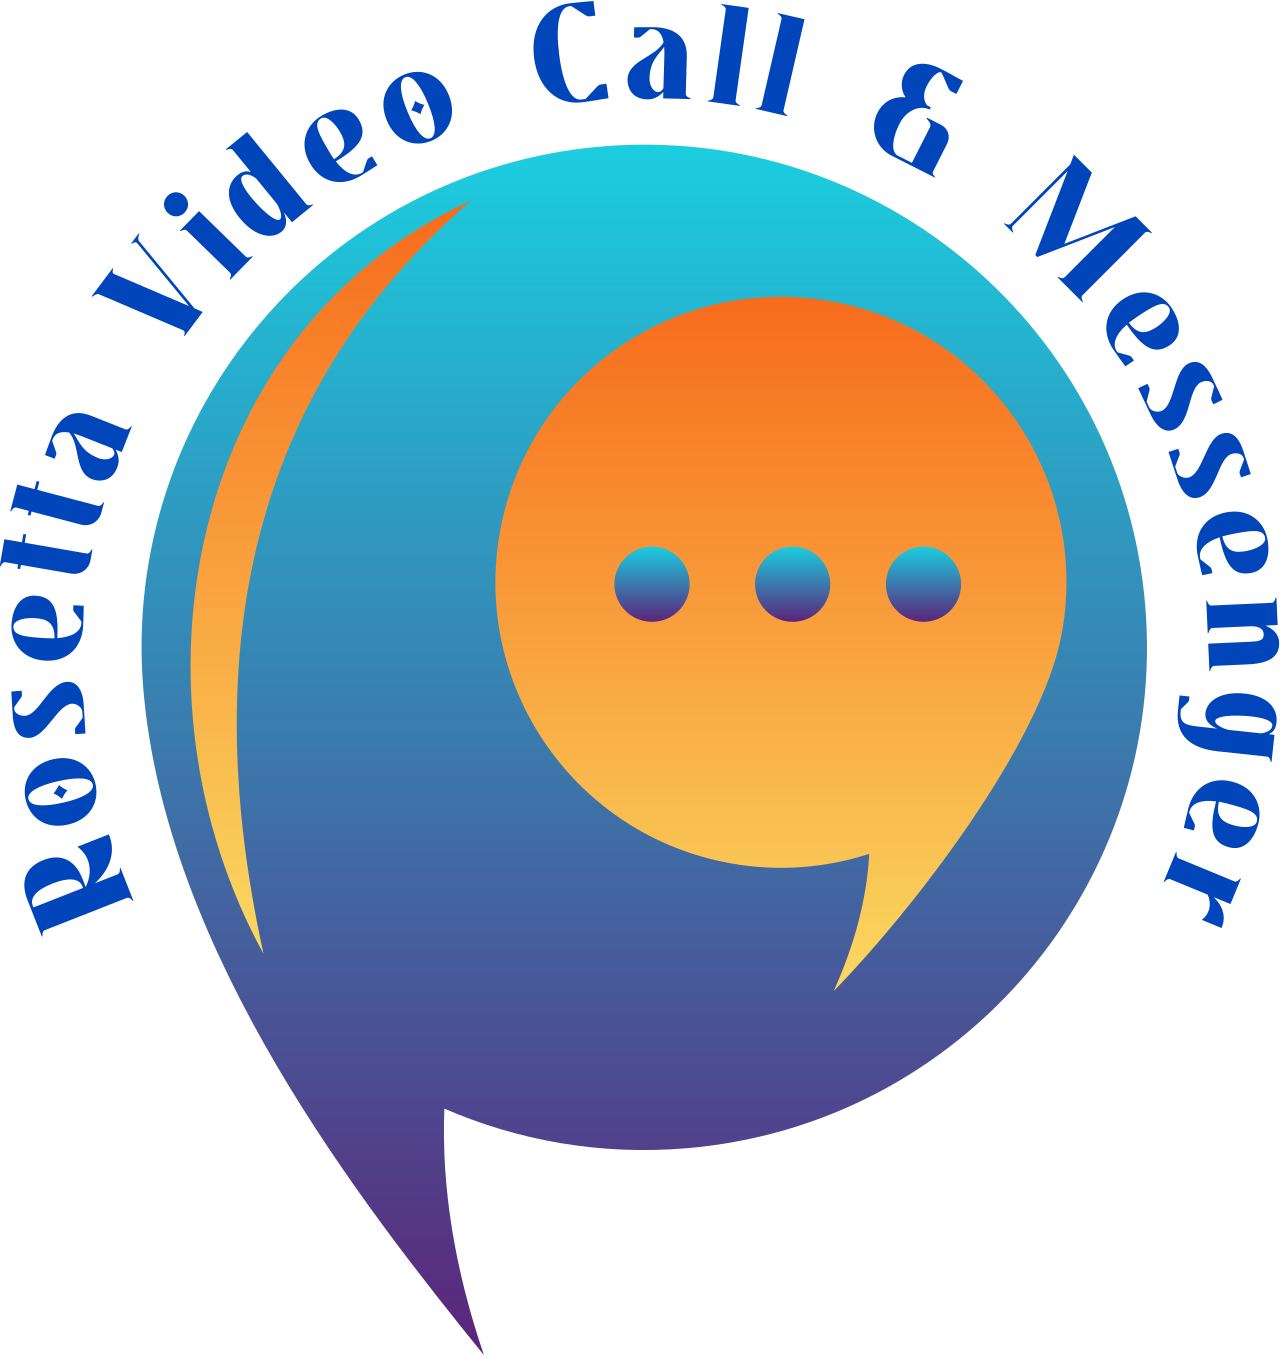 Rosetta Video Call & Messenger's logo